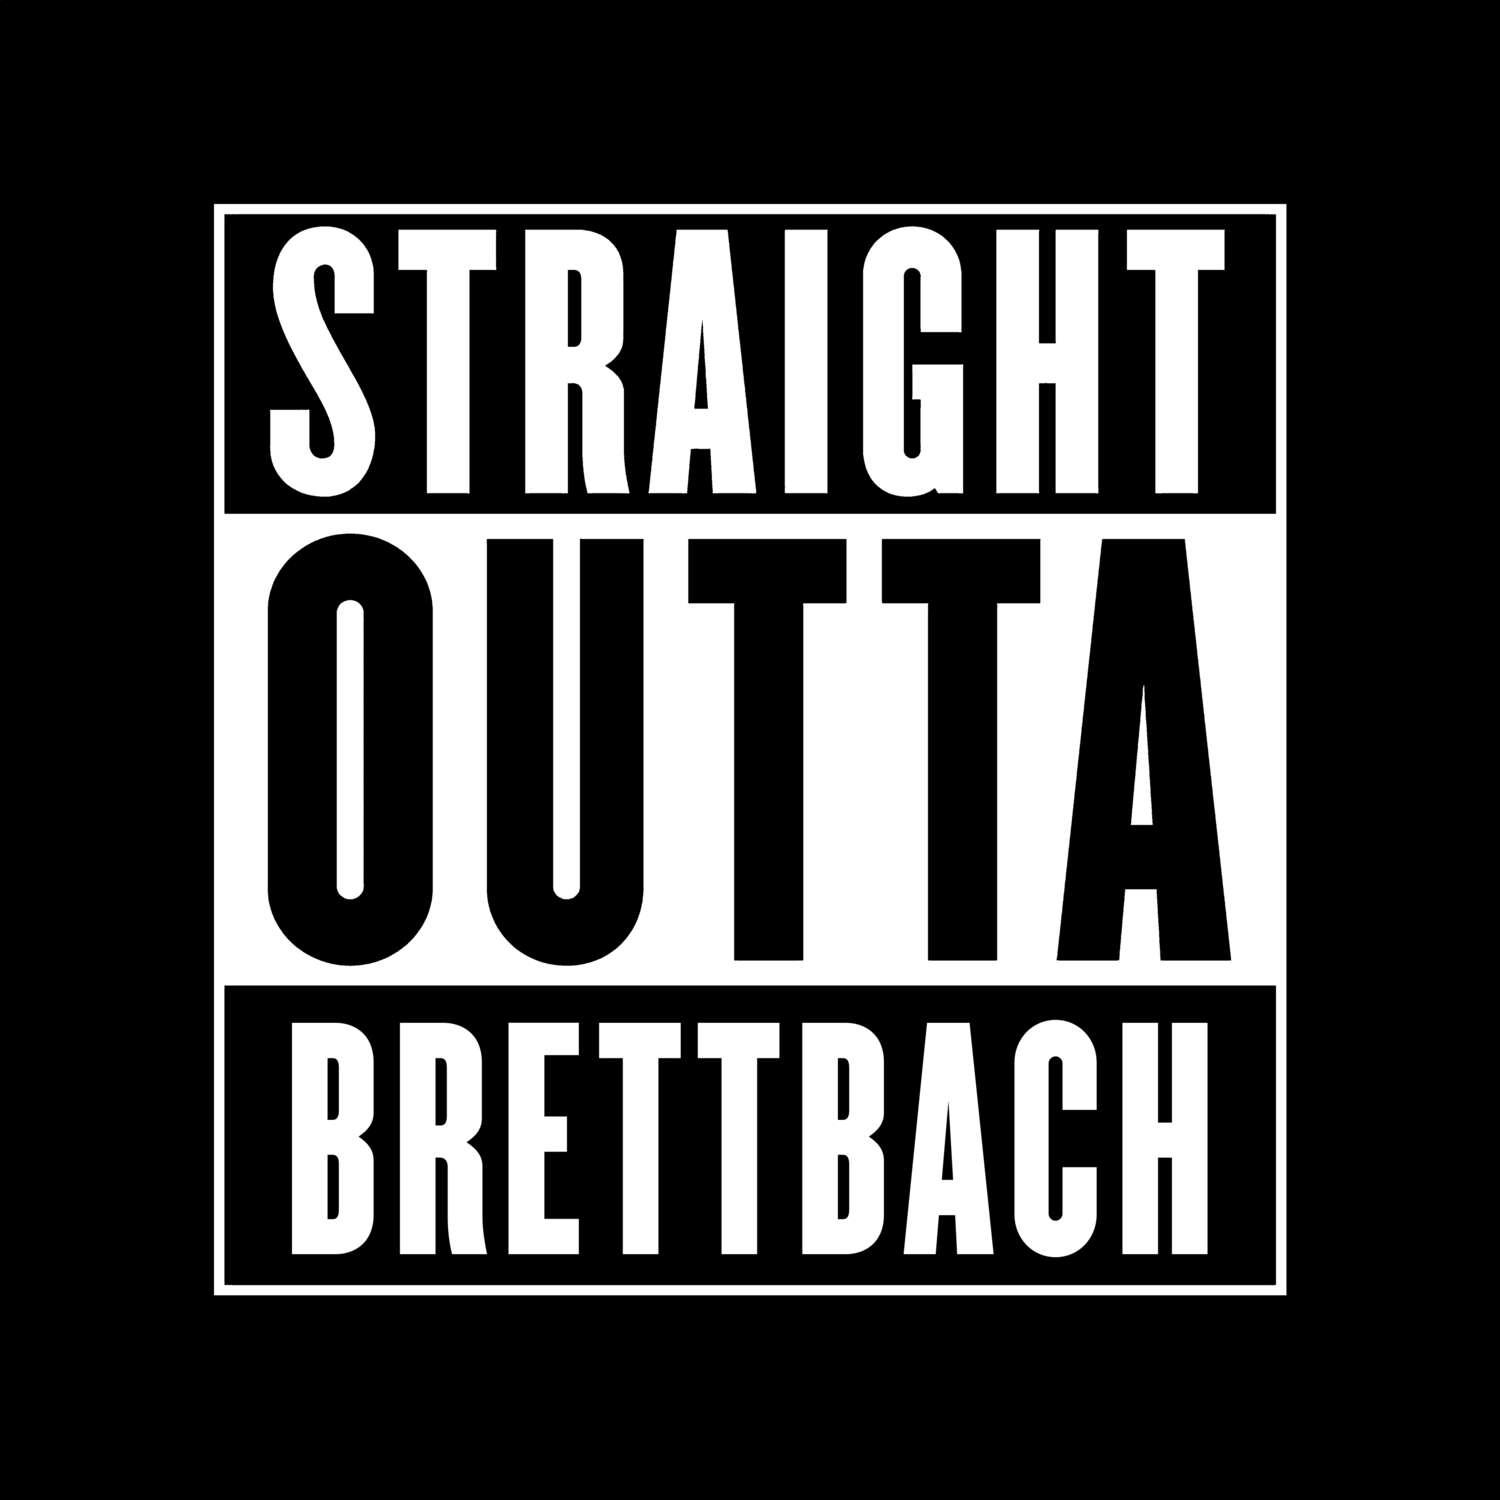 Brettbach T-Shirt »Straight Outta«